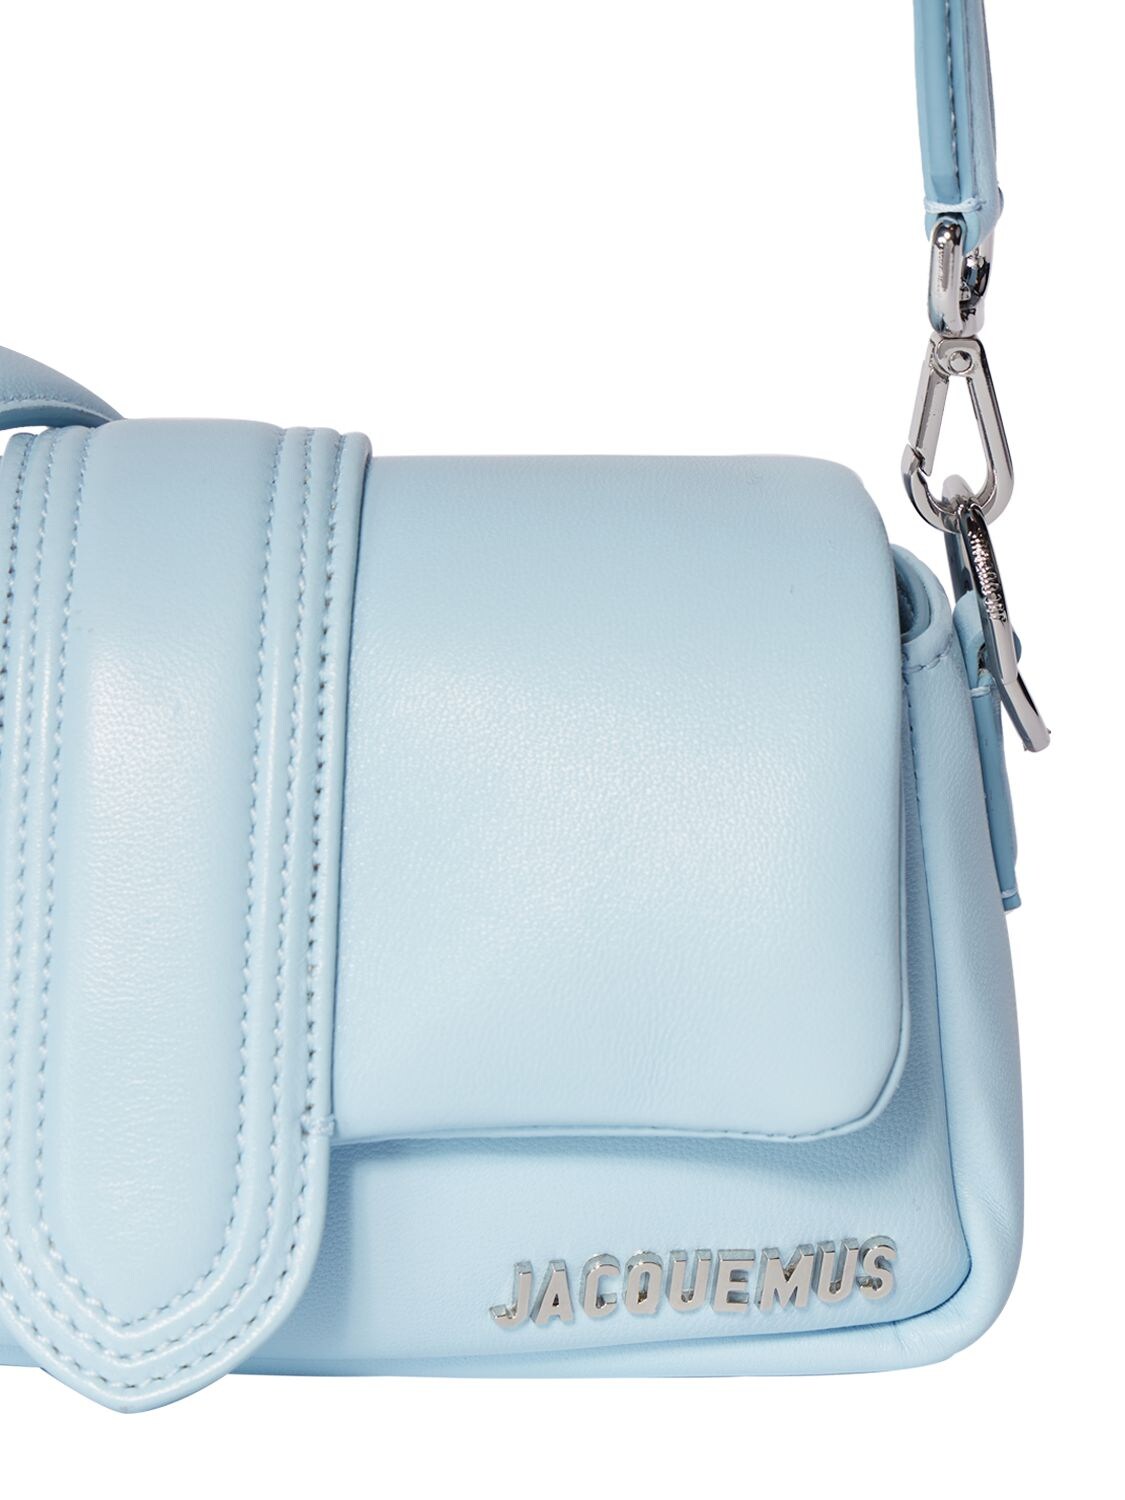 Jacquemus Le Petit Bambimou Leather Shoulder Bag - Neutrals